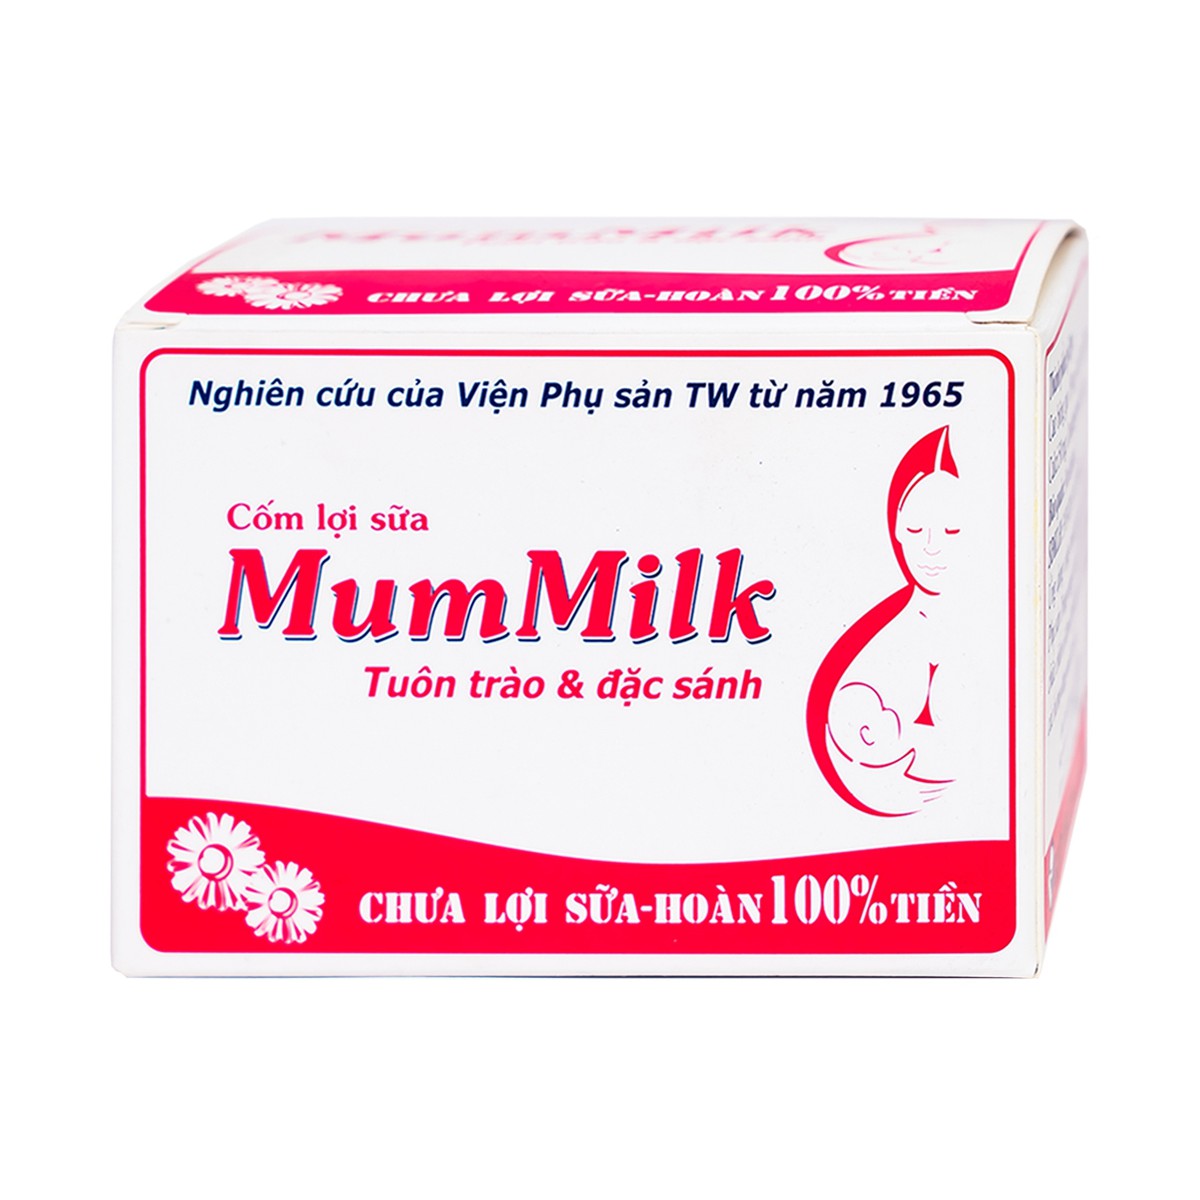 Cốm Lợi Sữa MumMilk